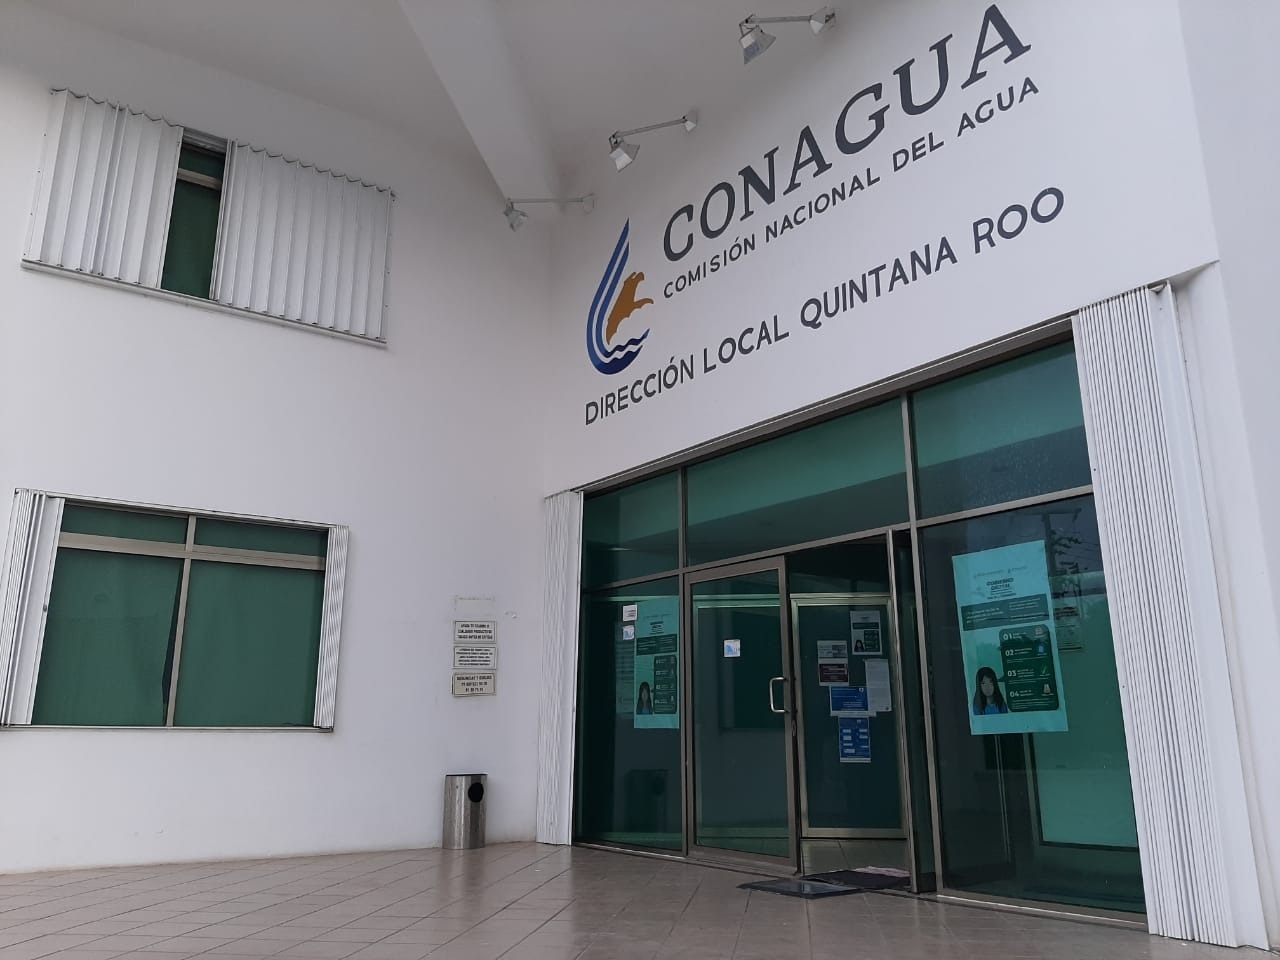 Los trabajadores permitieron que la delegación de la Conagua en Quintana Roo reiniciara labores tras cuatro días de paro